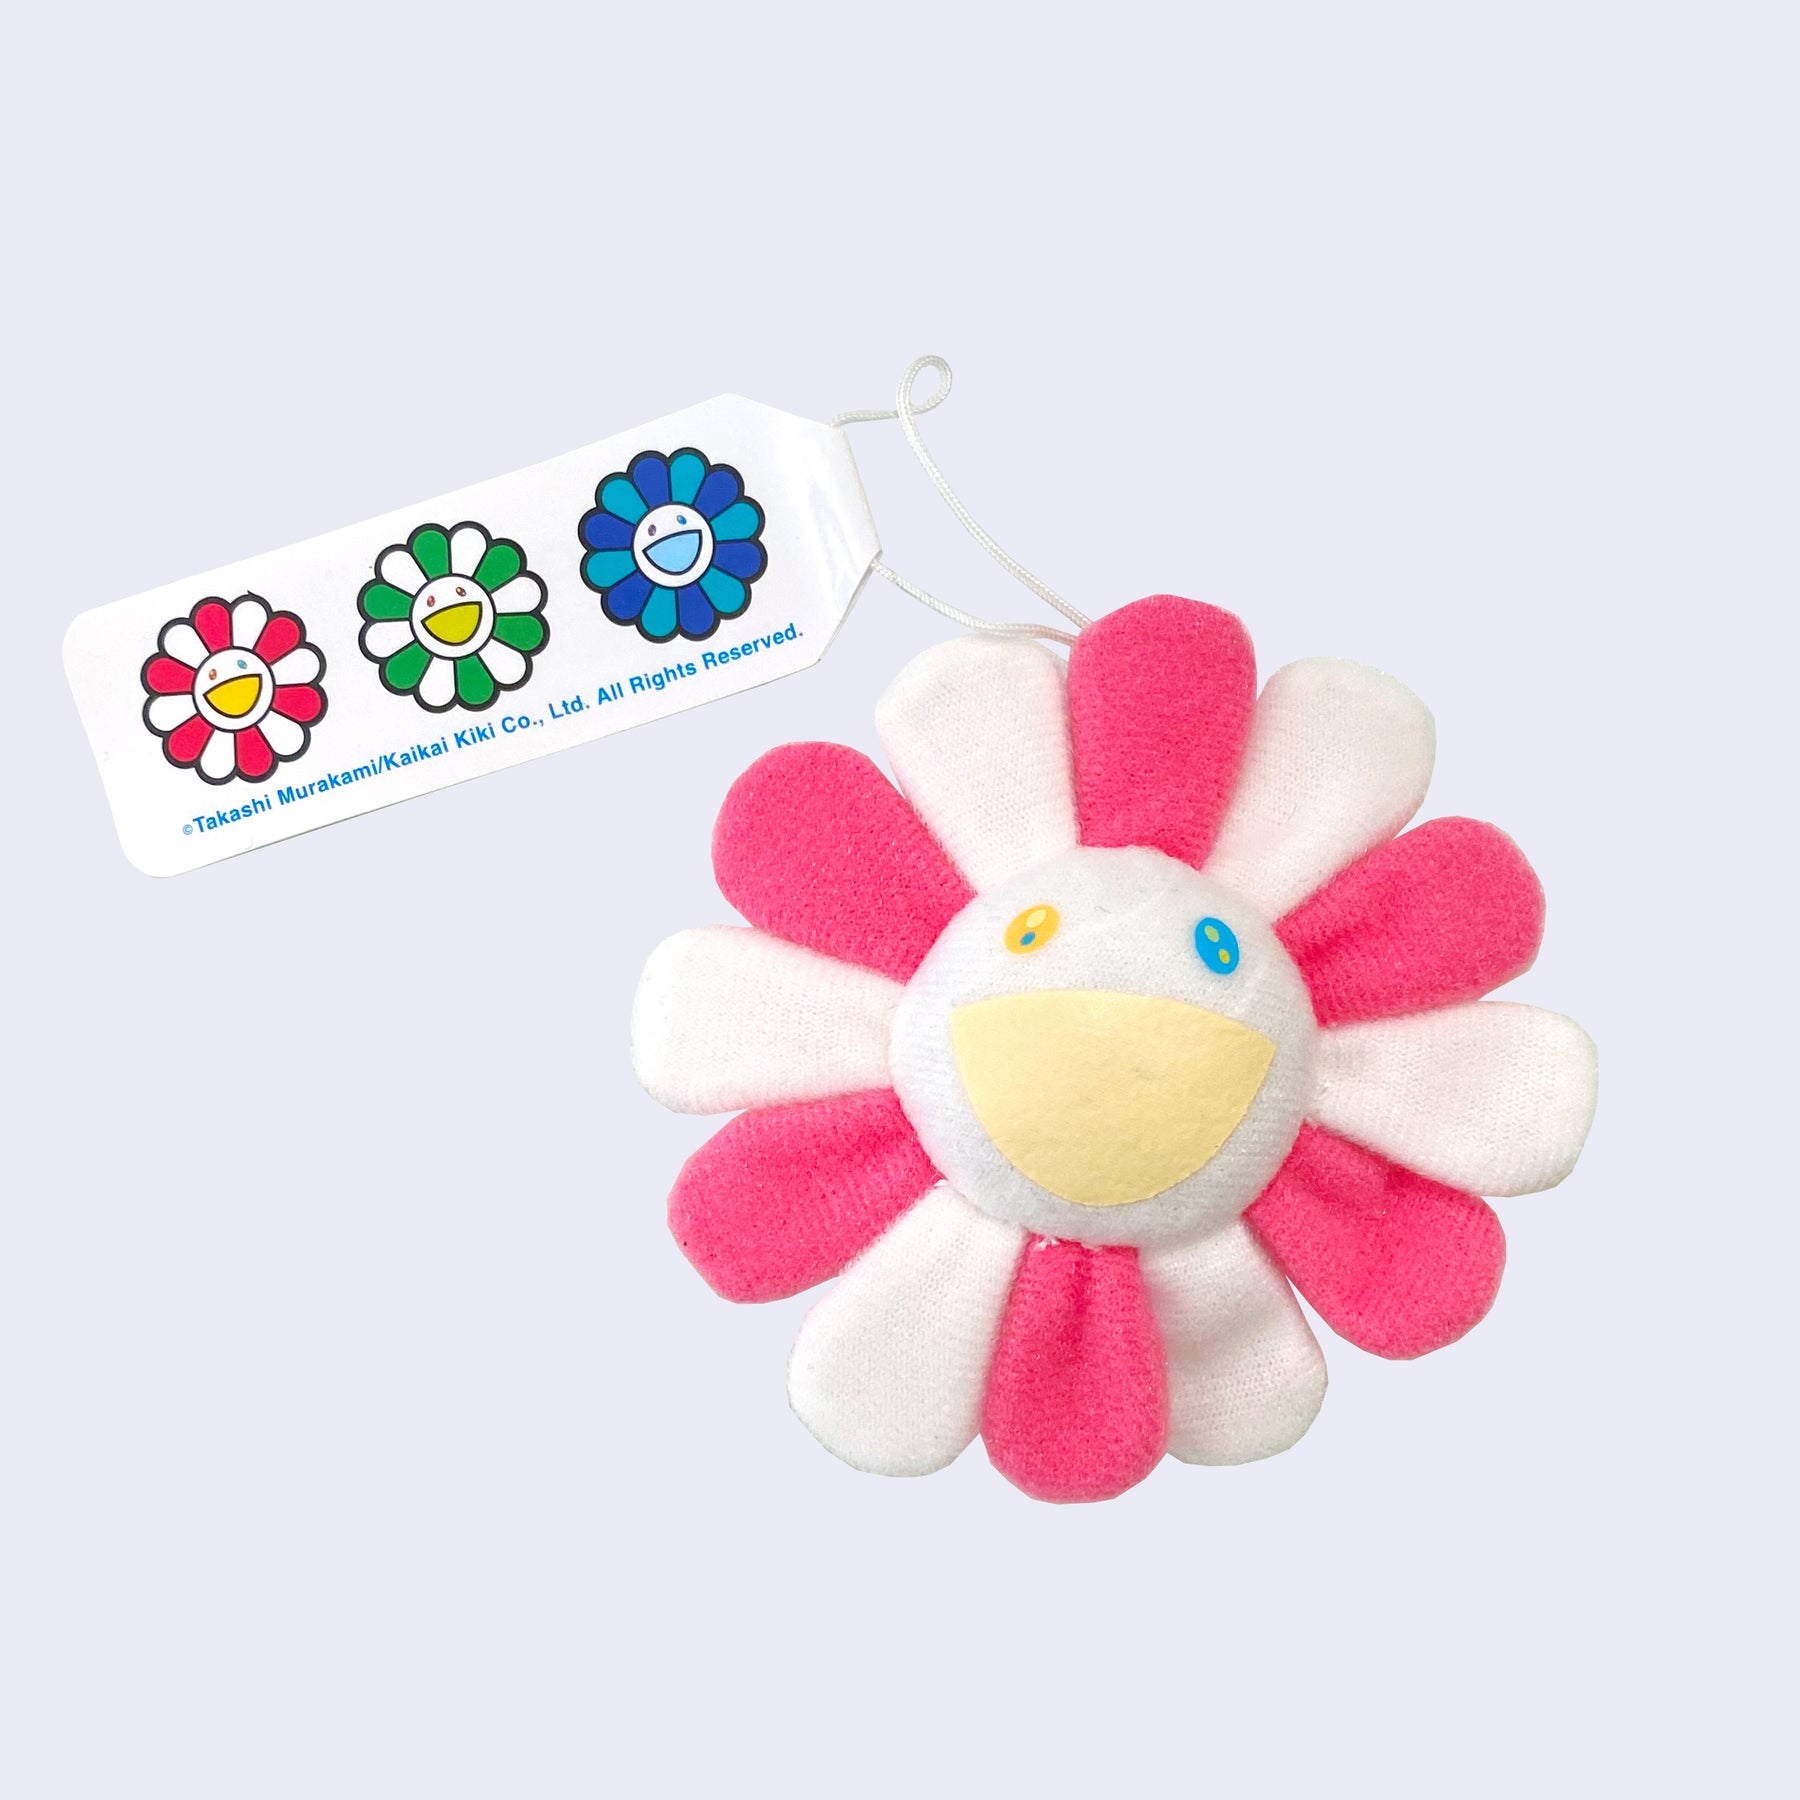  Murakami Flower Keychain